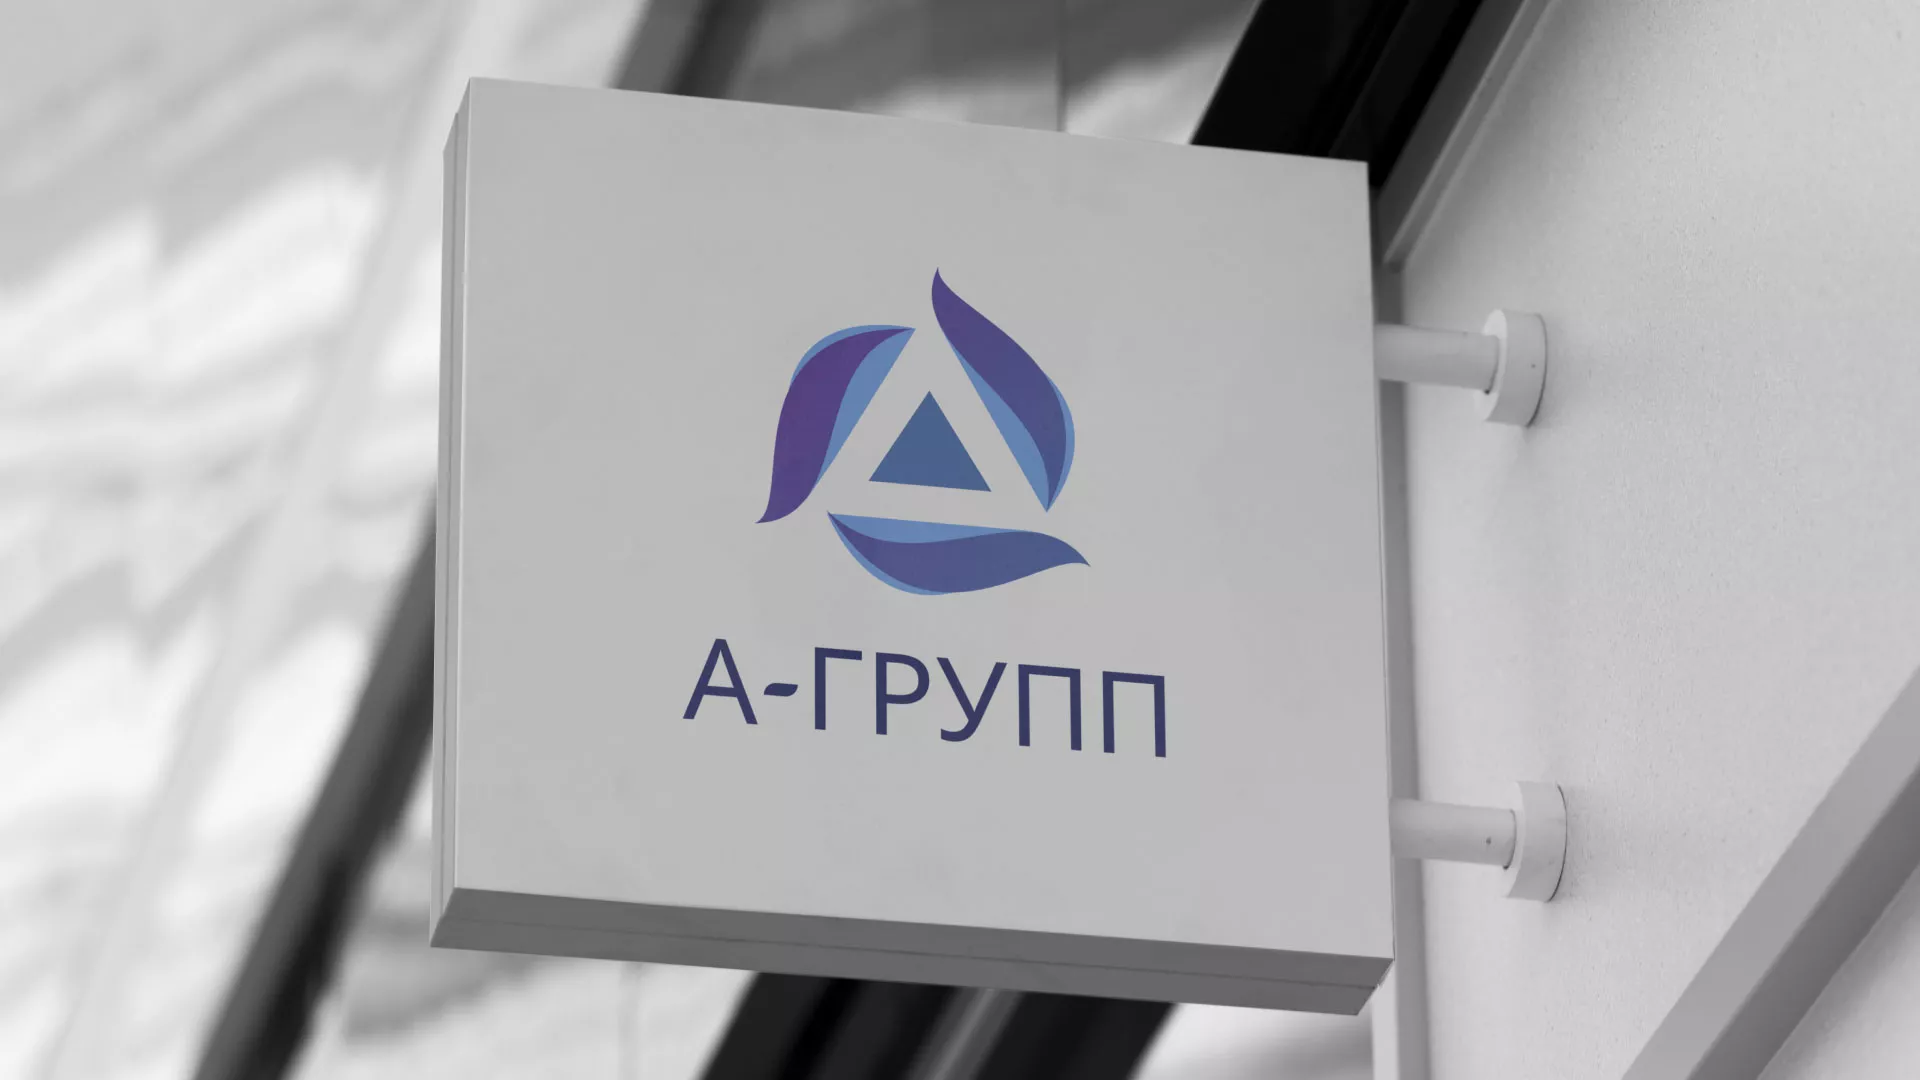 Создание логотипа компании «А-ГРУПП» в Омутнинске